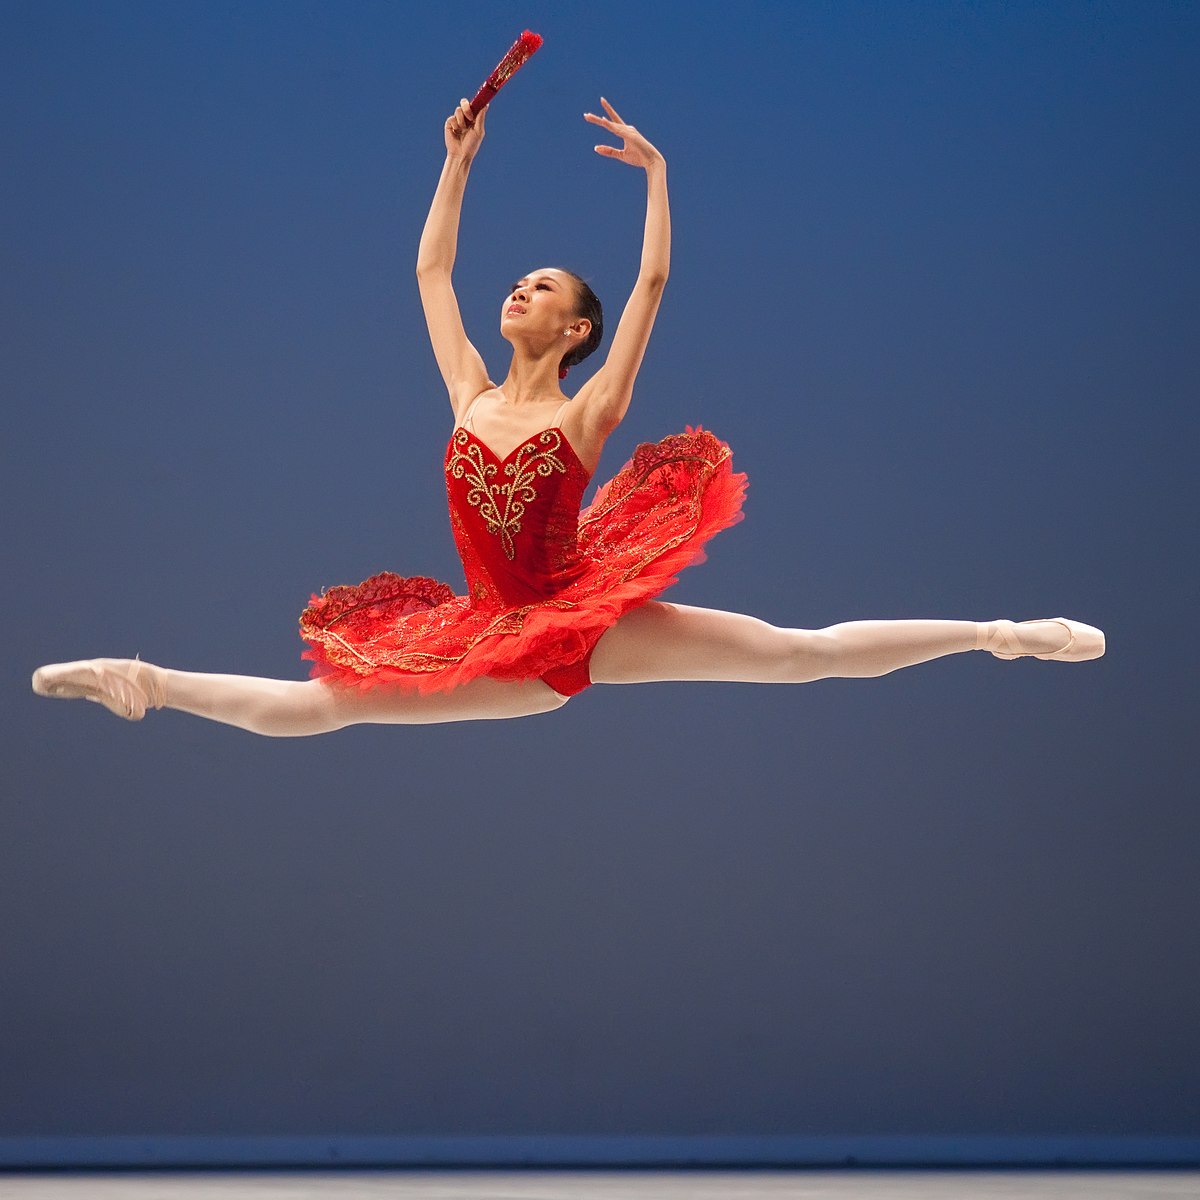 Ballet shoe - Wikipedia